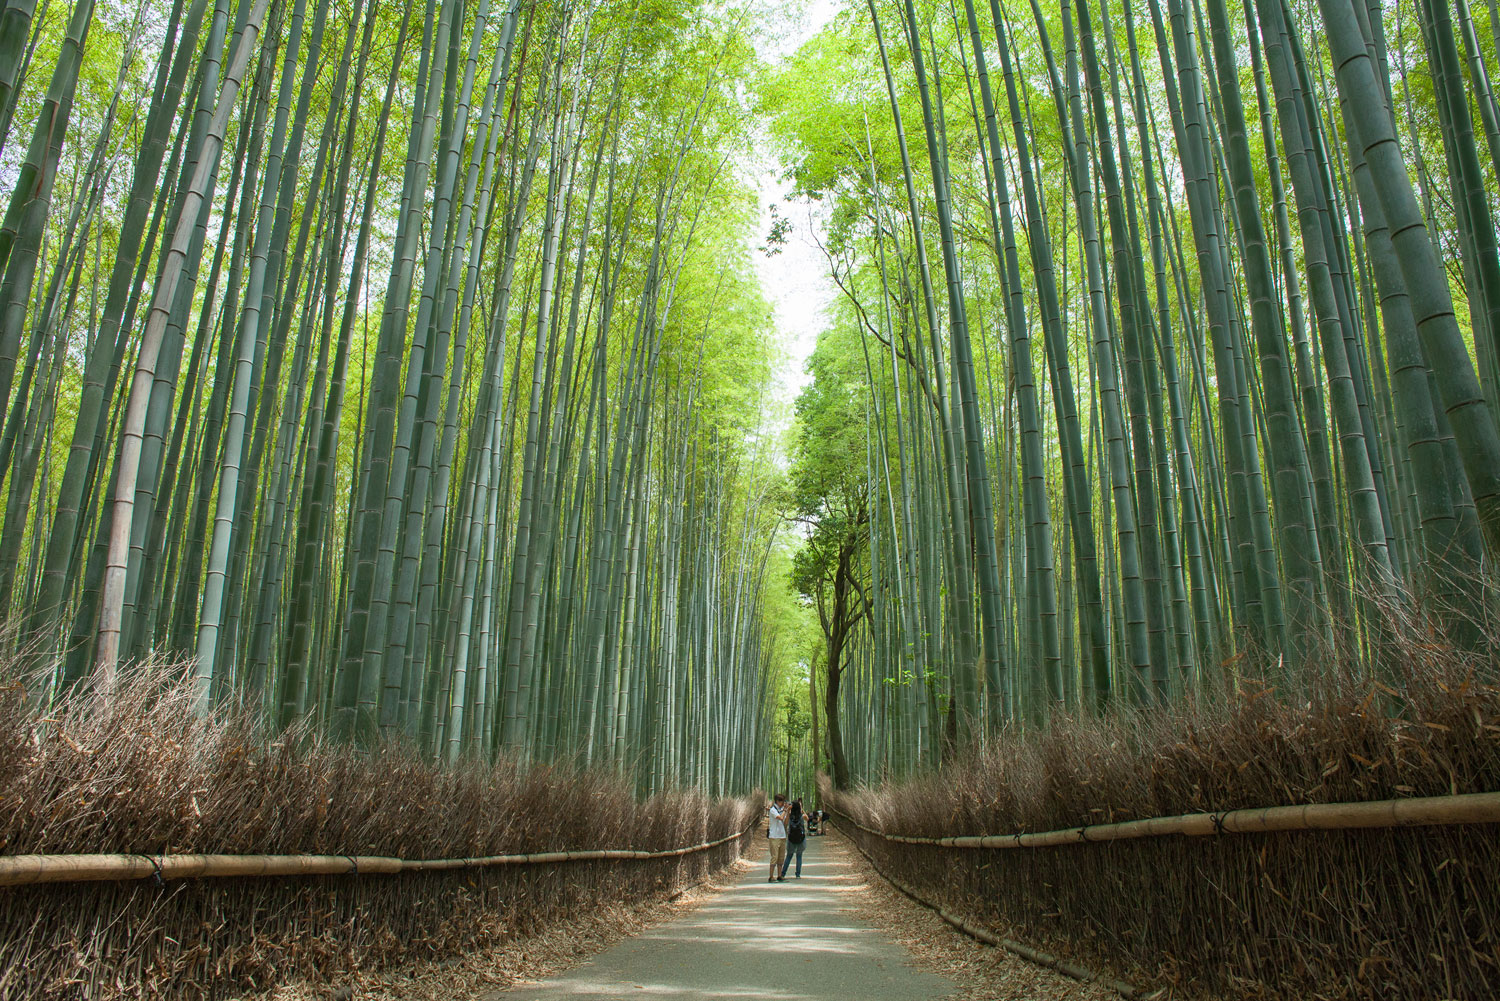 The Arashiyama Bamboo Grove in Kyoto, Japan.